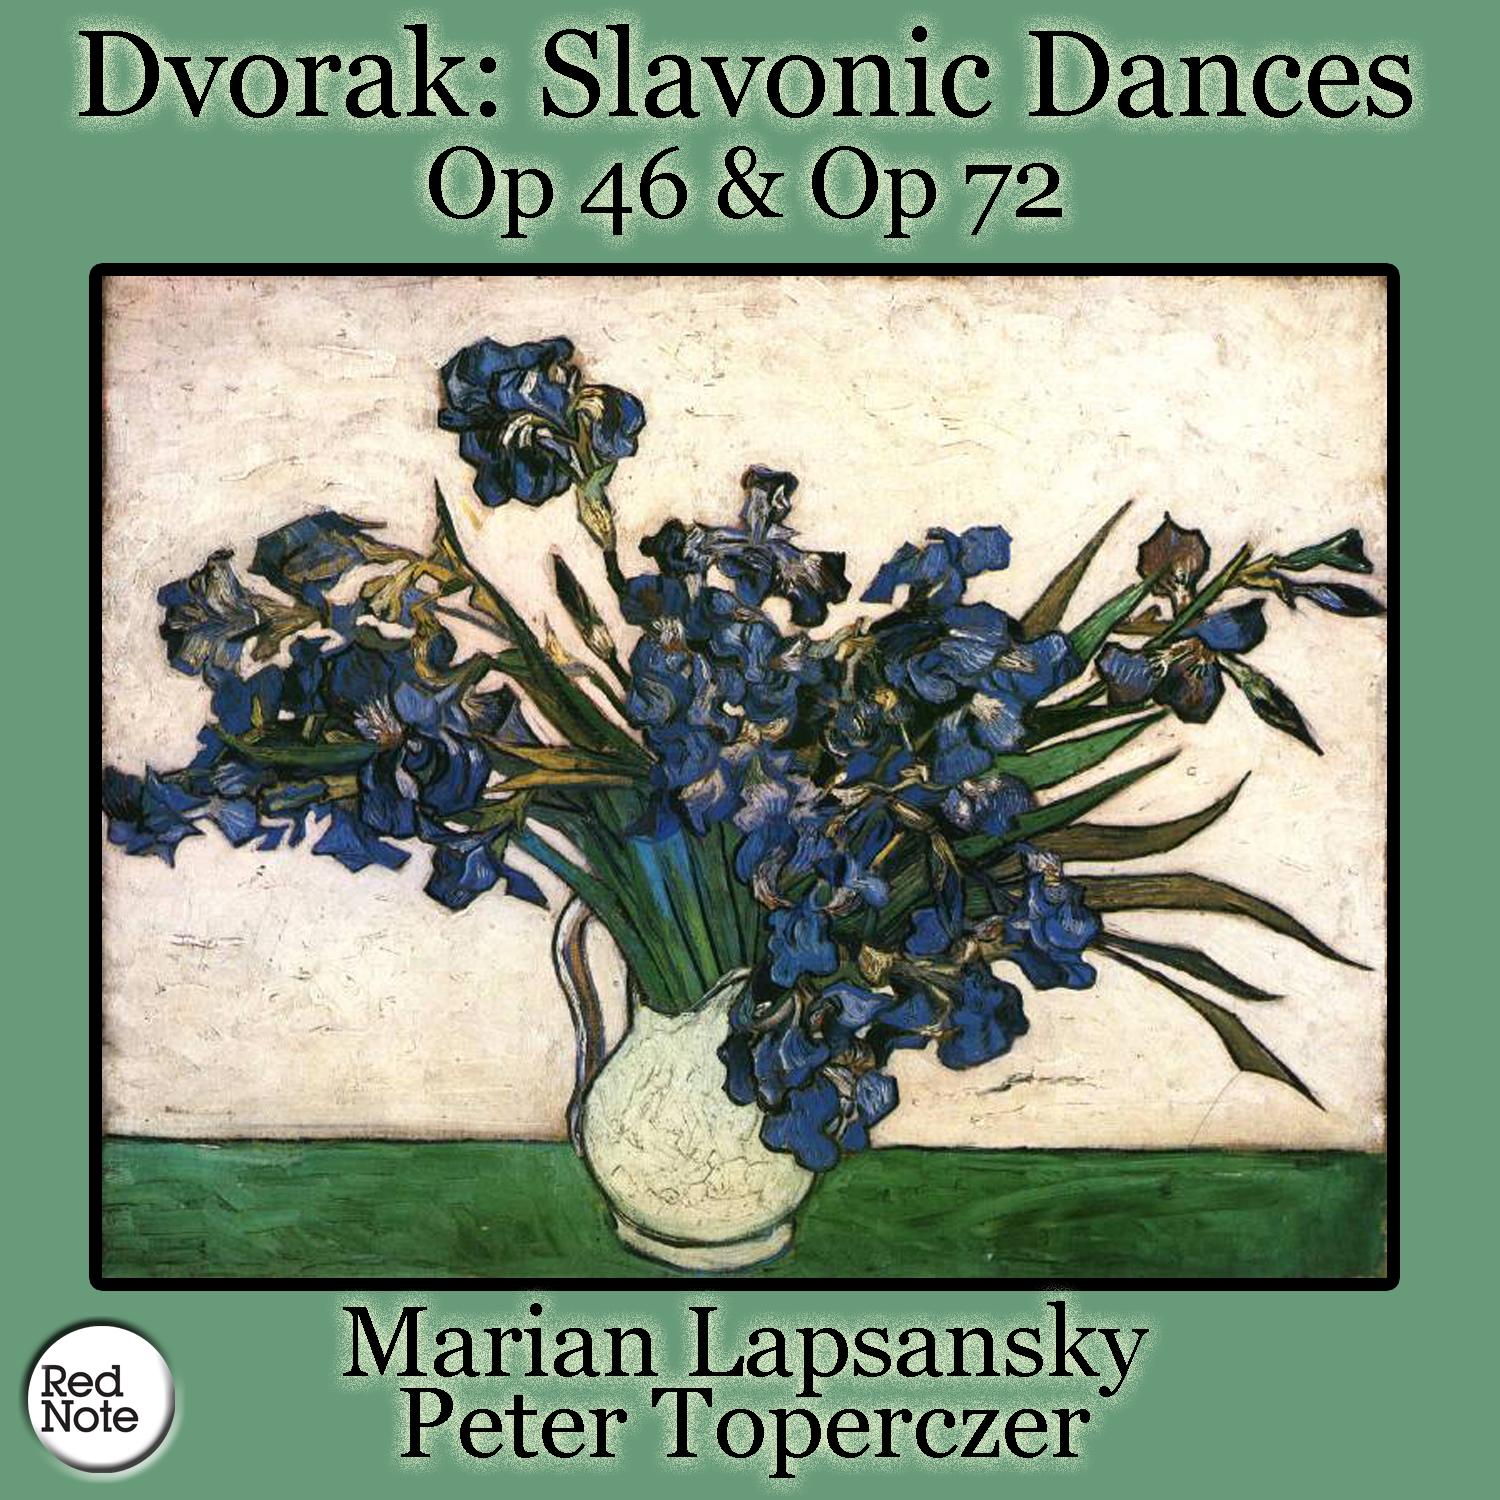 Slavonic Dances in C Major, Op.46: I. Presto